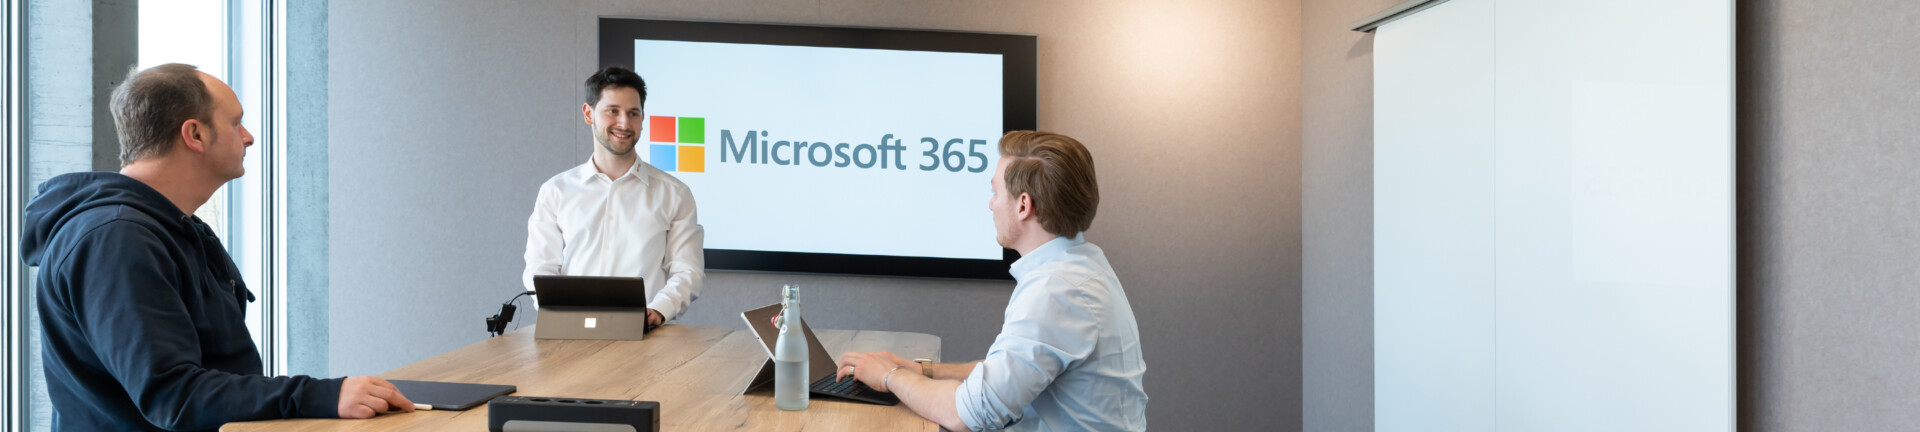 Microsoft 365 für Grossunternehmen Featured Image